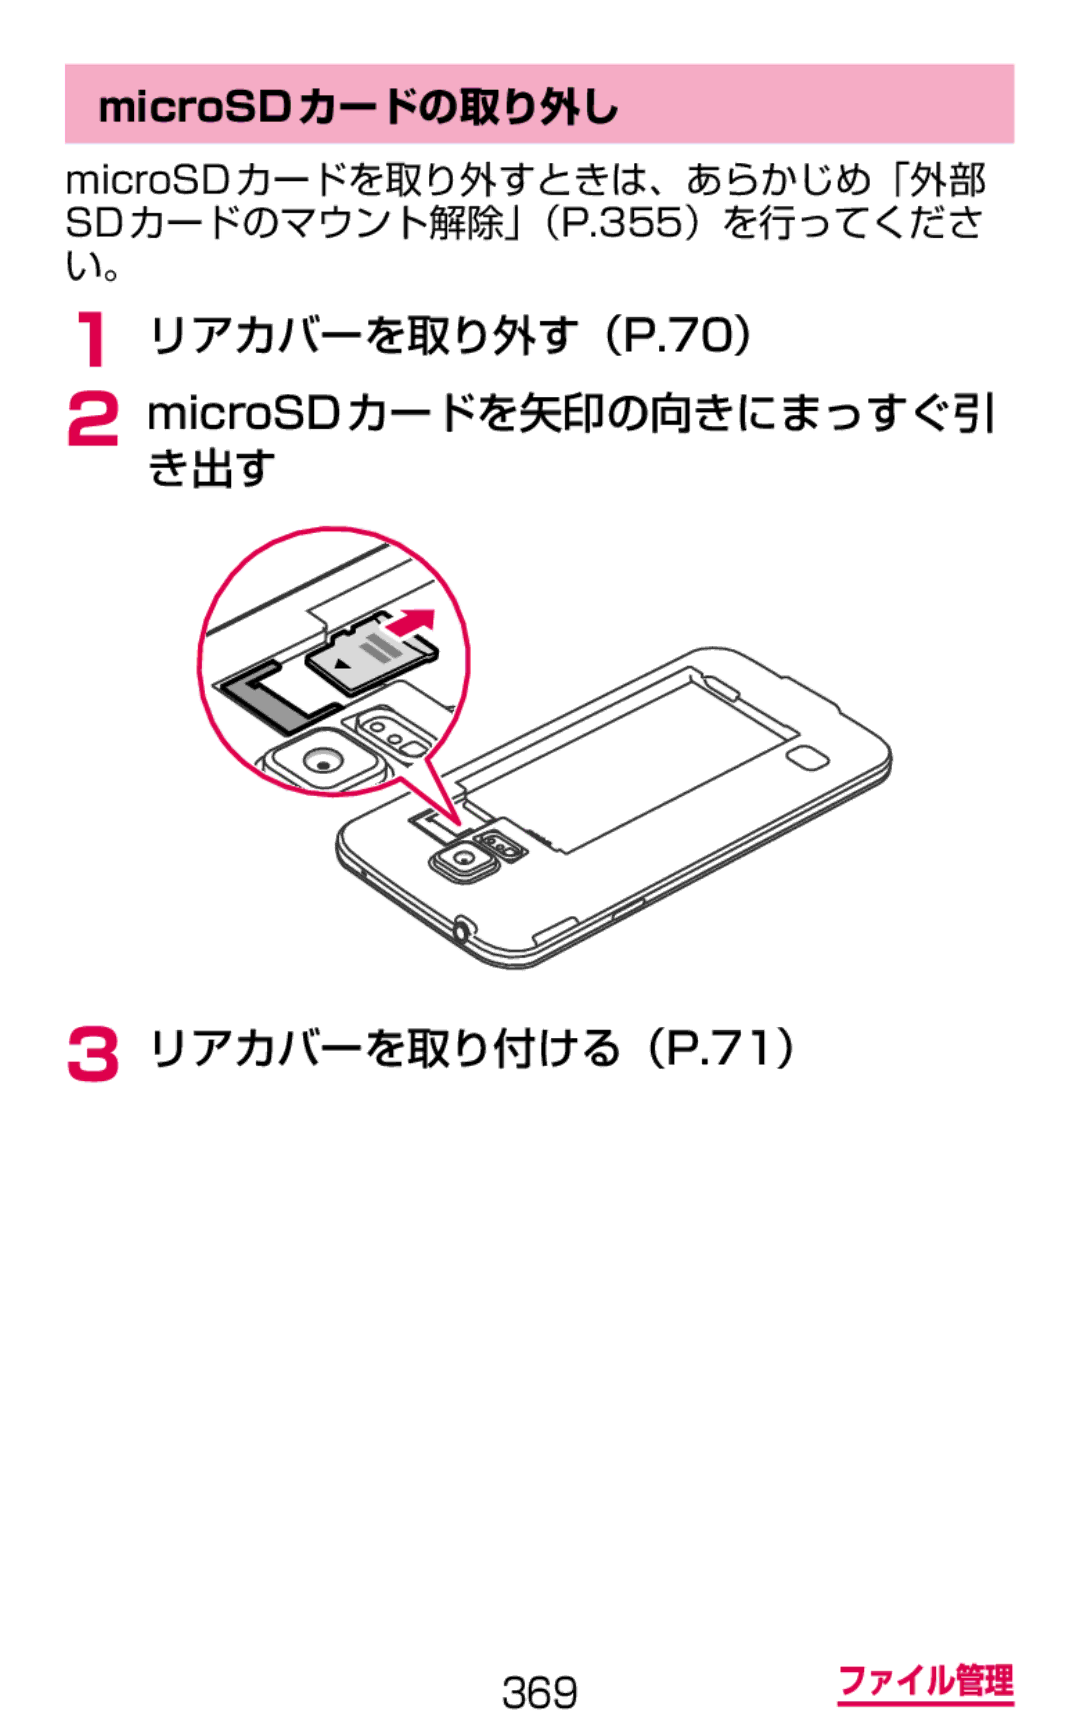 Samsung SM-G900DZKEDCM, SM-G900DZWEDCM manual MicroSDカードの取り外し, MicroSD カードを取り外すときは、あらかじめ「外部 SDカードのマウント解除」（P.355）を行ってくださ い。 